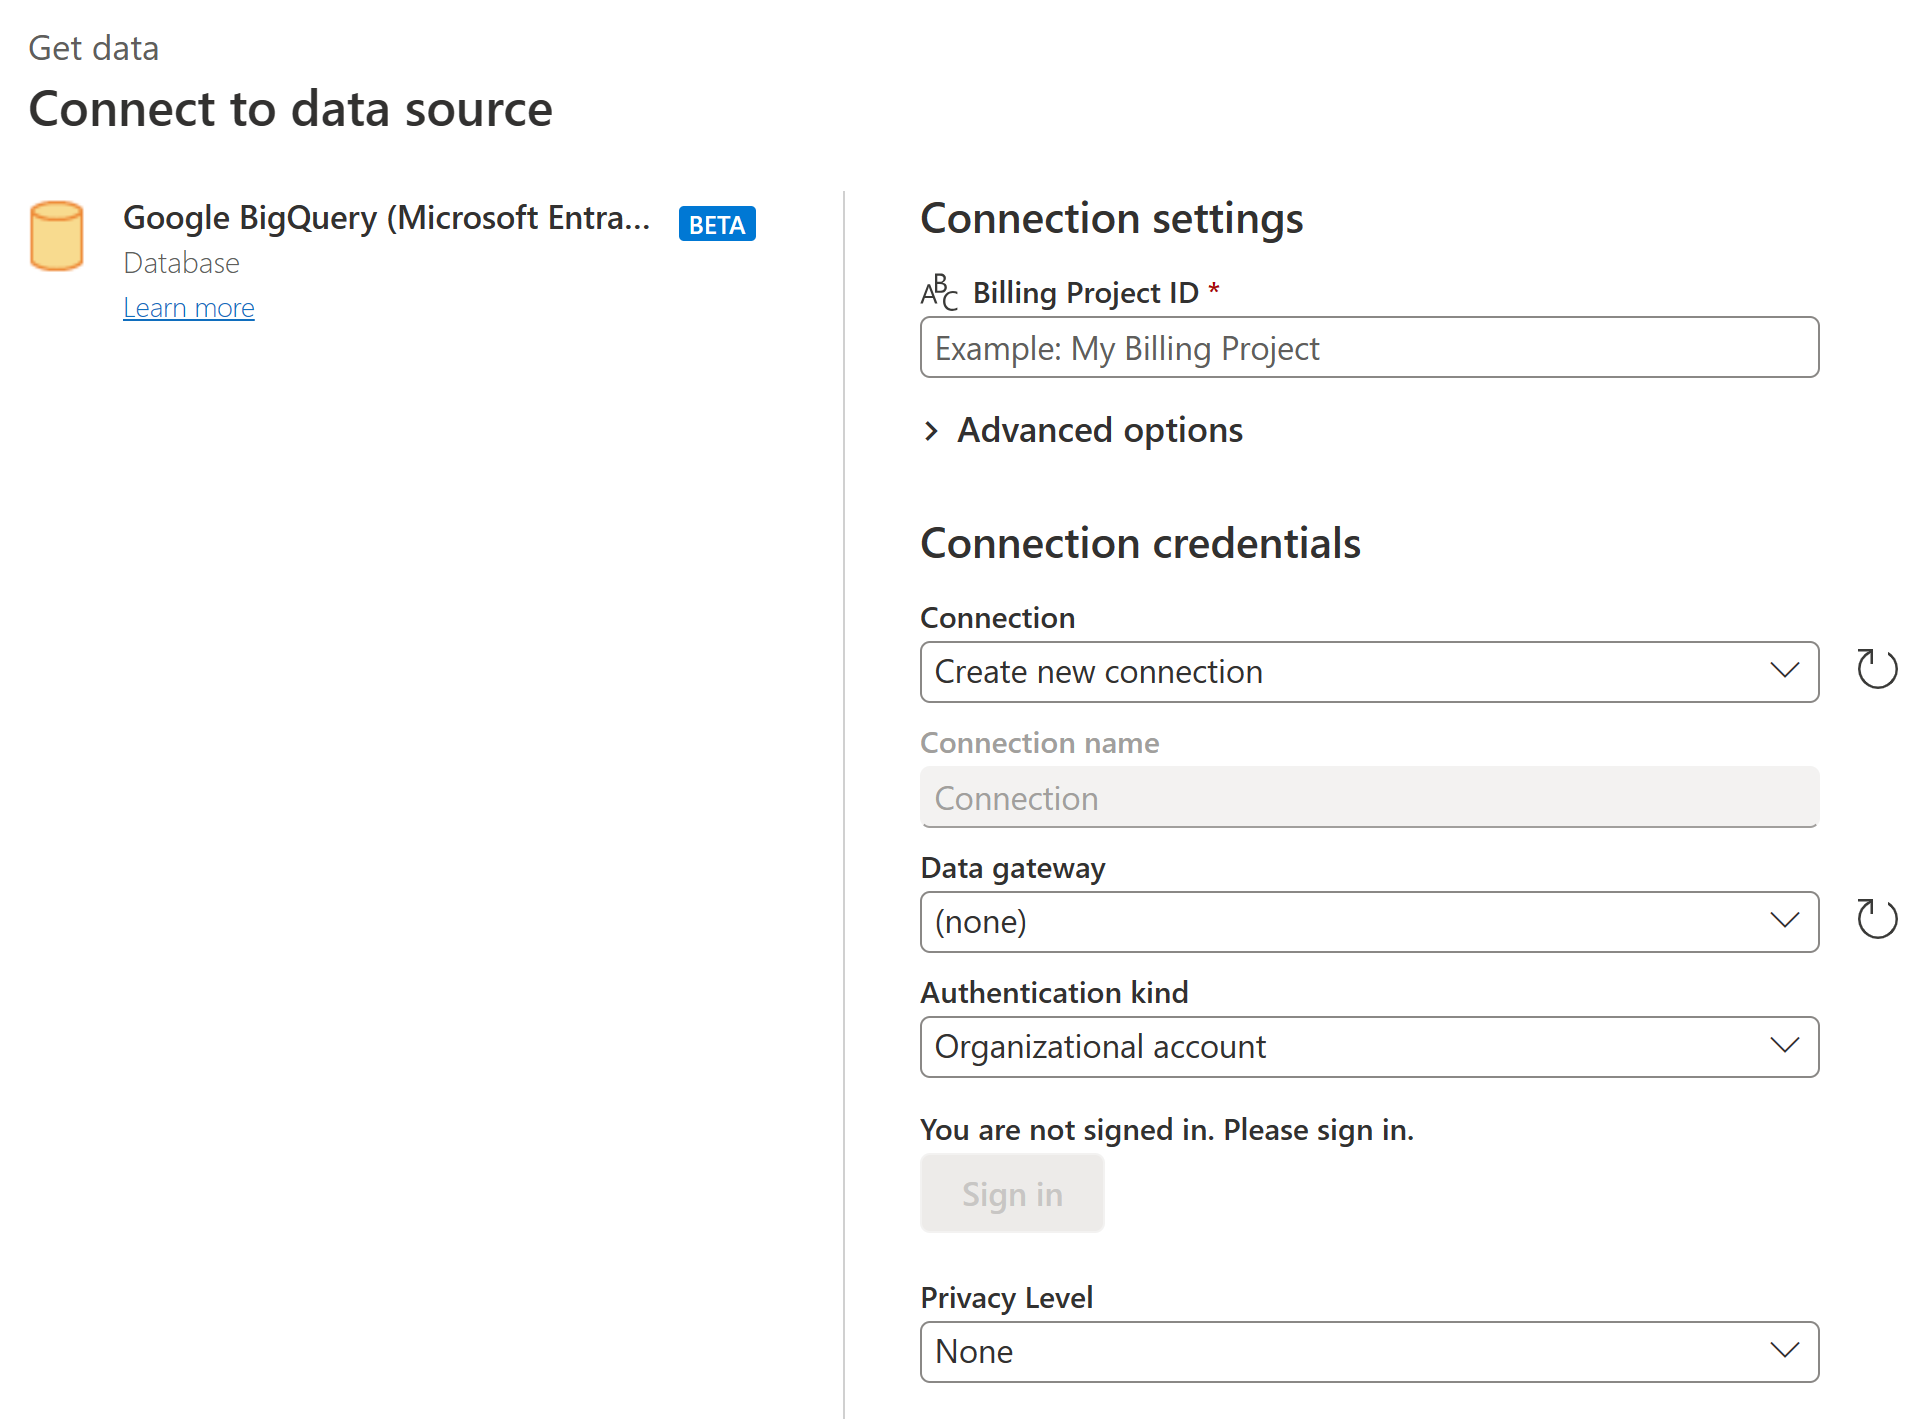 Capture d’écran de la boîte de dialogue Connecter vers la source de données dans laquelle vous entrez vos paramètres de connexion et identifiants Google BigQuery (Microsoft Entra ID).